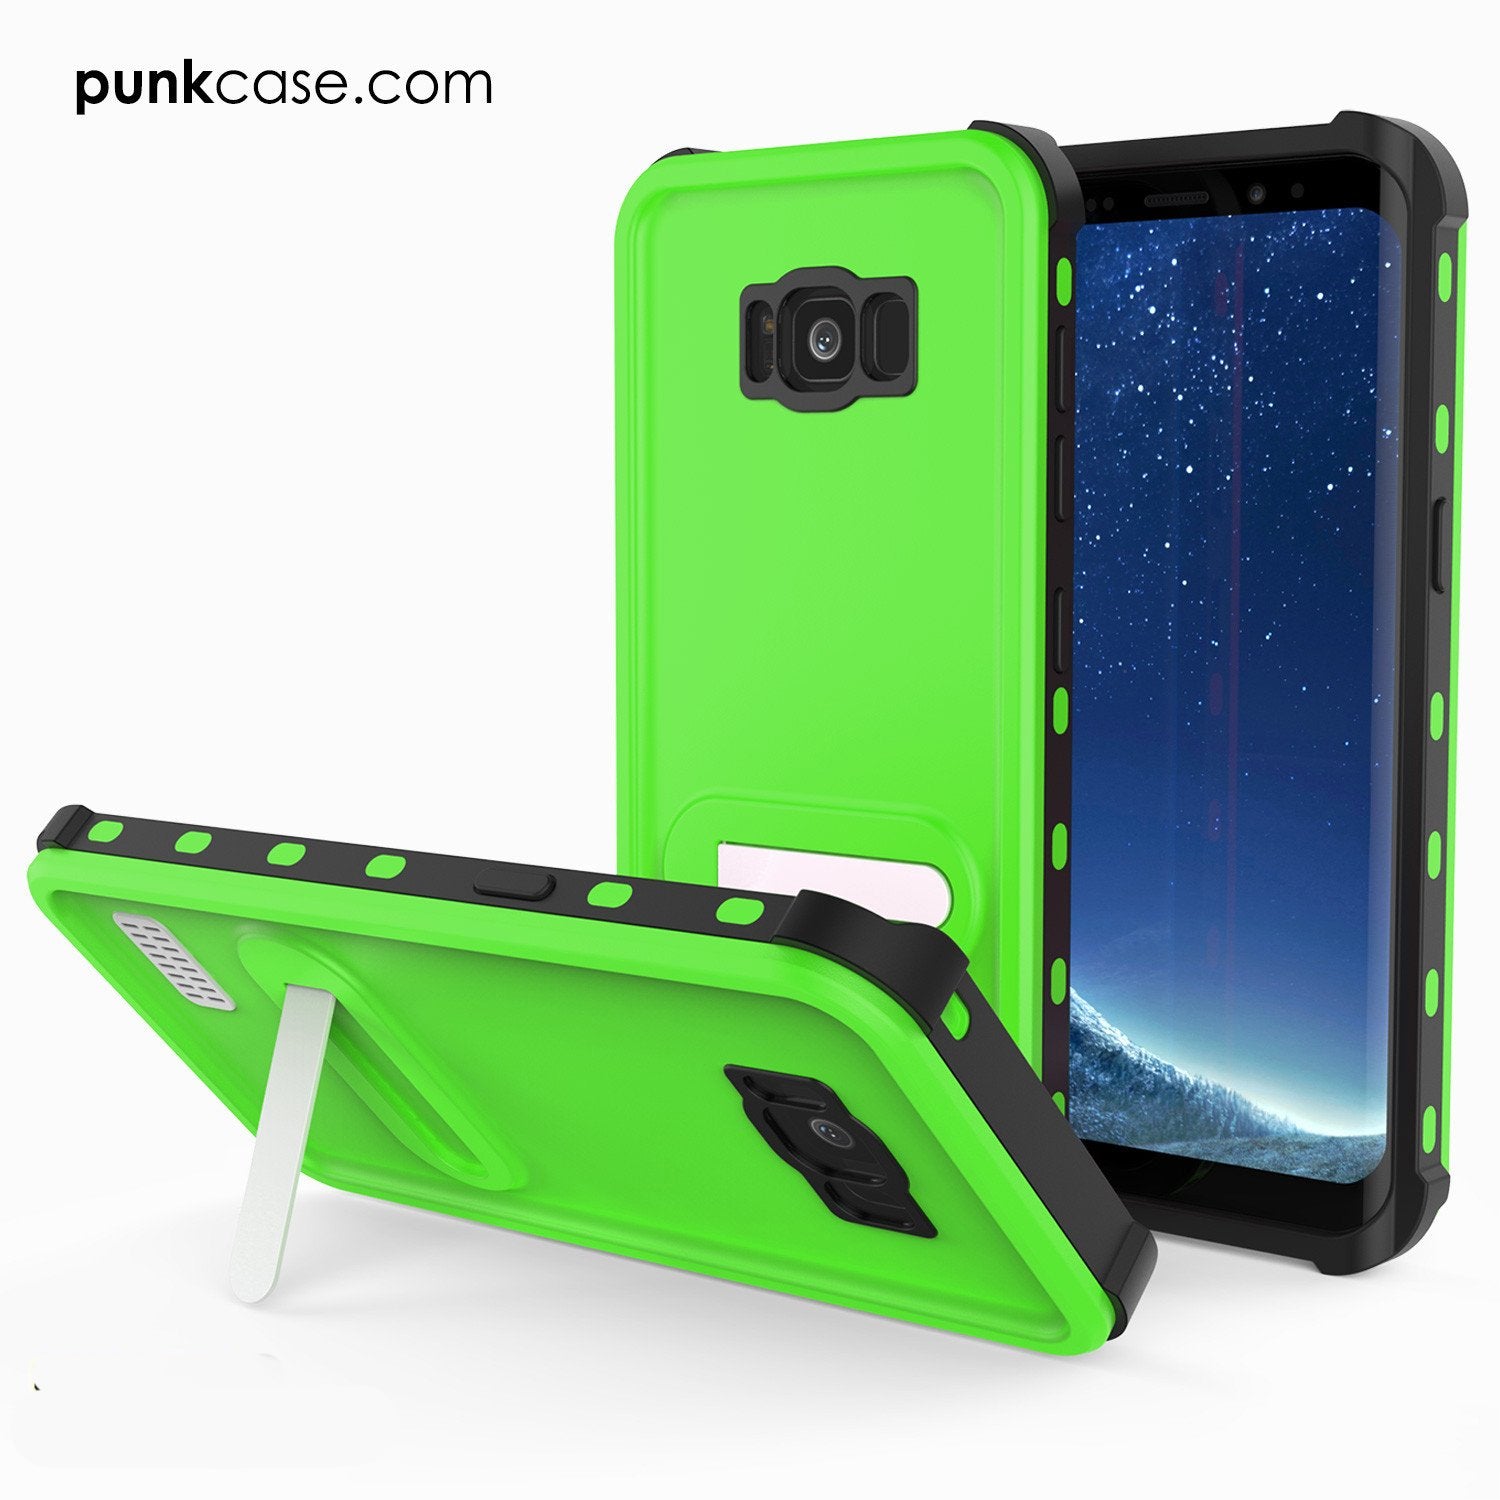 Galaxy S8 Punkcase KickStud Series W/Built-In Kickstand Case, Green